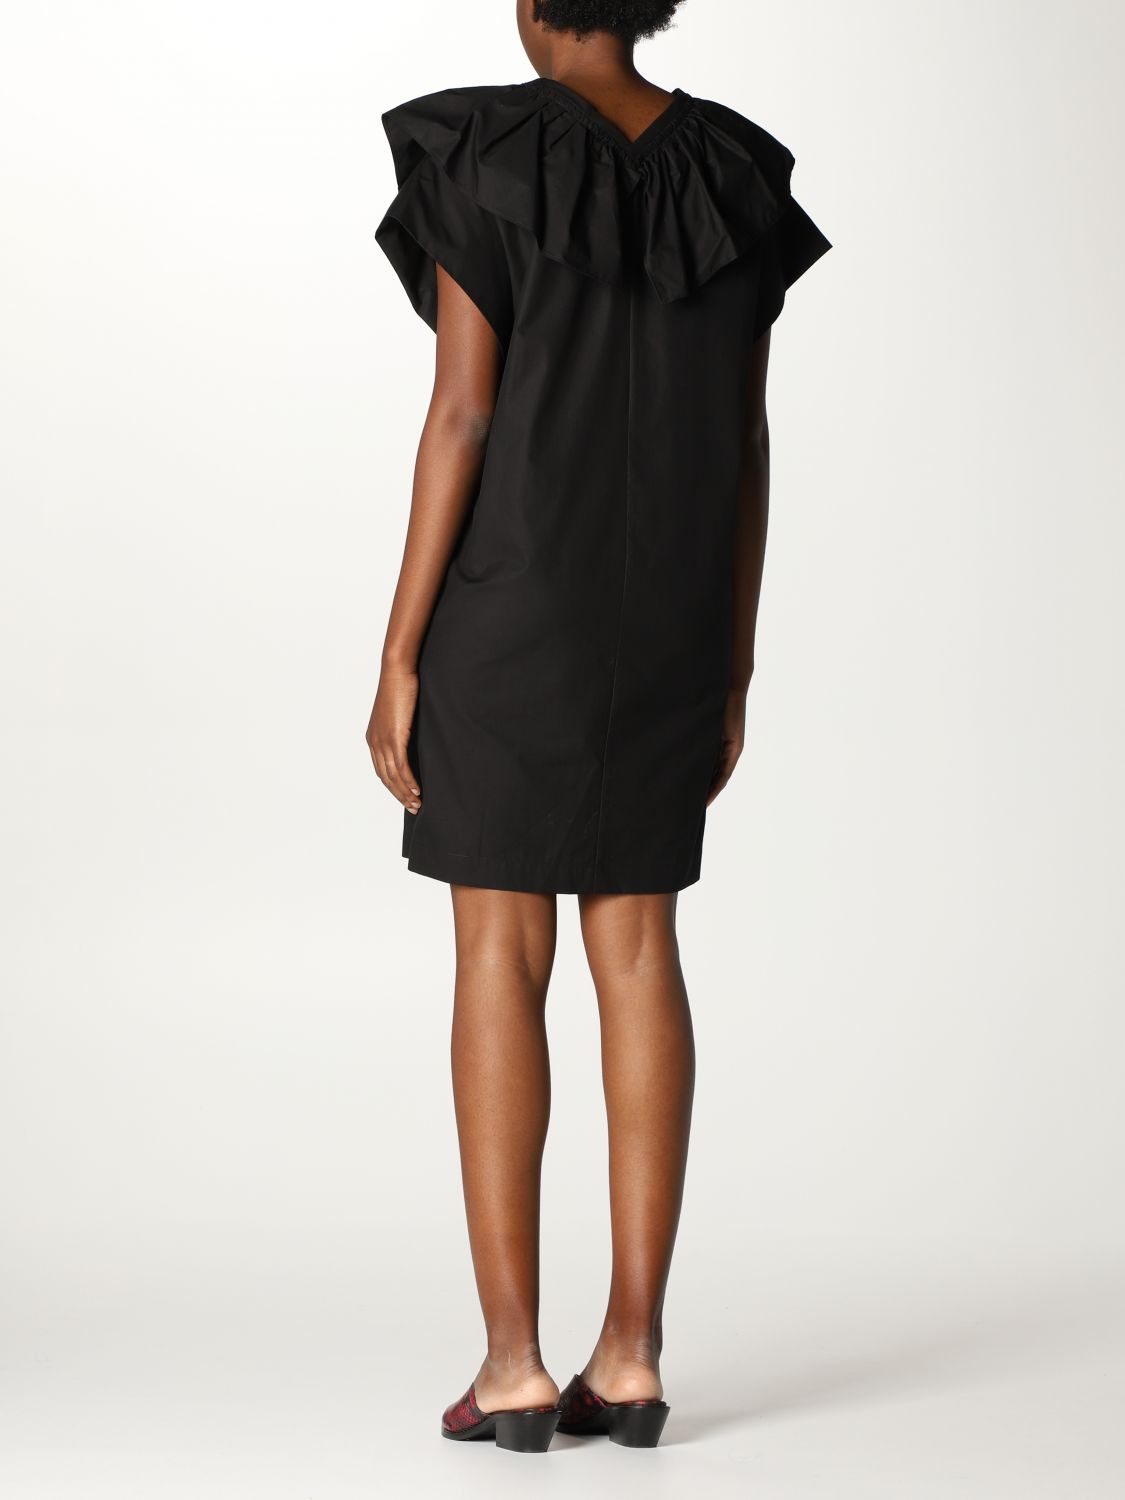 Dress Tela: Tela dress for women black 2